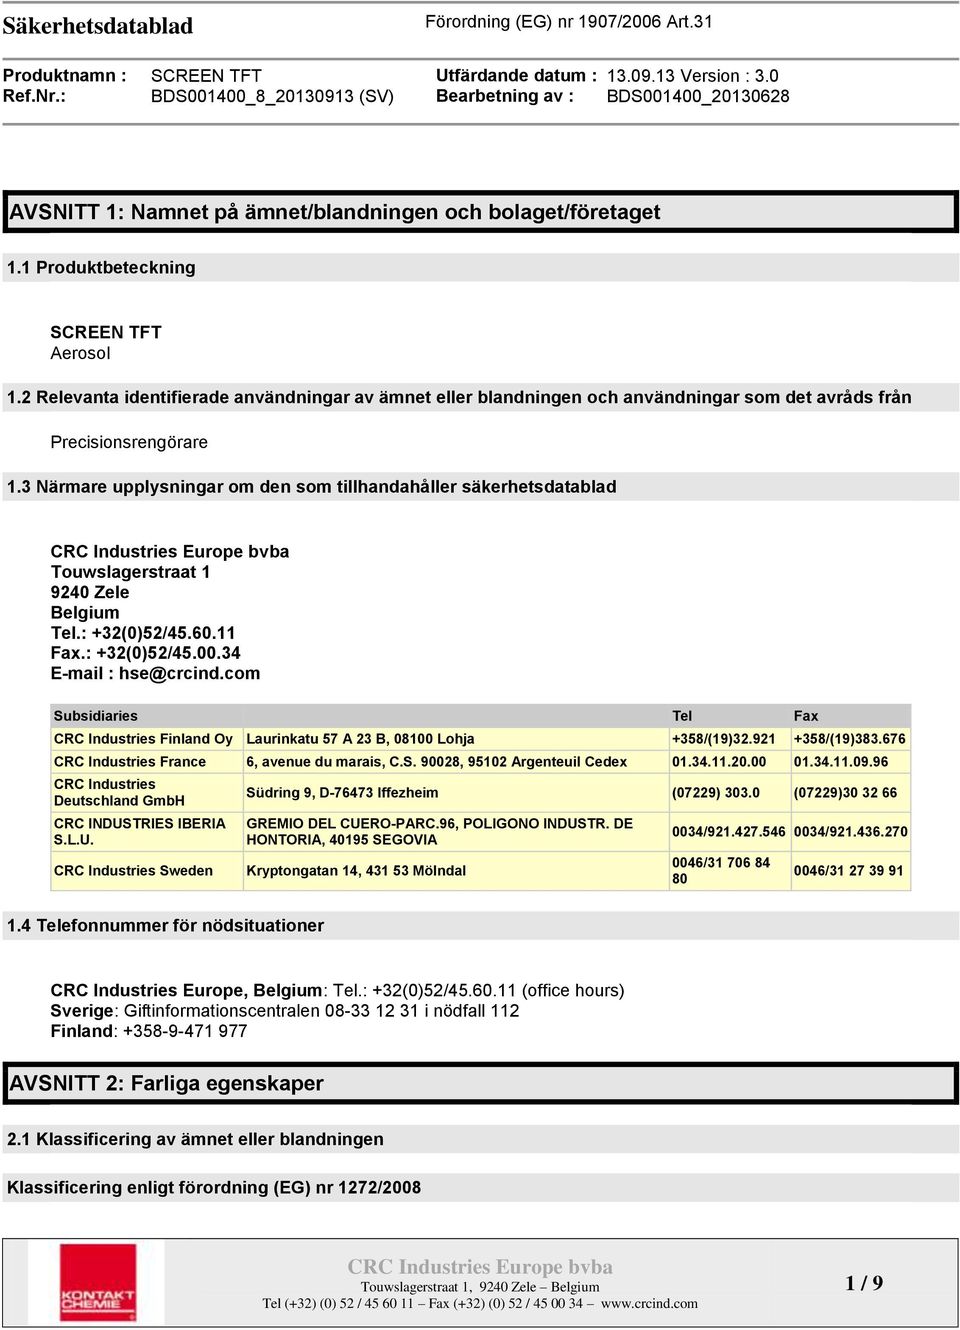 3 Närmare upplysningar om den som tillhandahåller säkerhetsdatablad Touwslagerstraat 1 9240 Zele Belgium Tel.: +32(0)52/45.60.11 Fax.: +32(0)52/45.00.34 E-mail : hse@crcind.